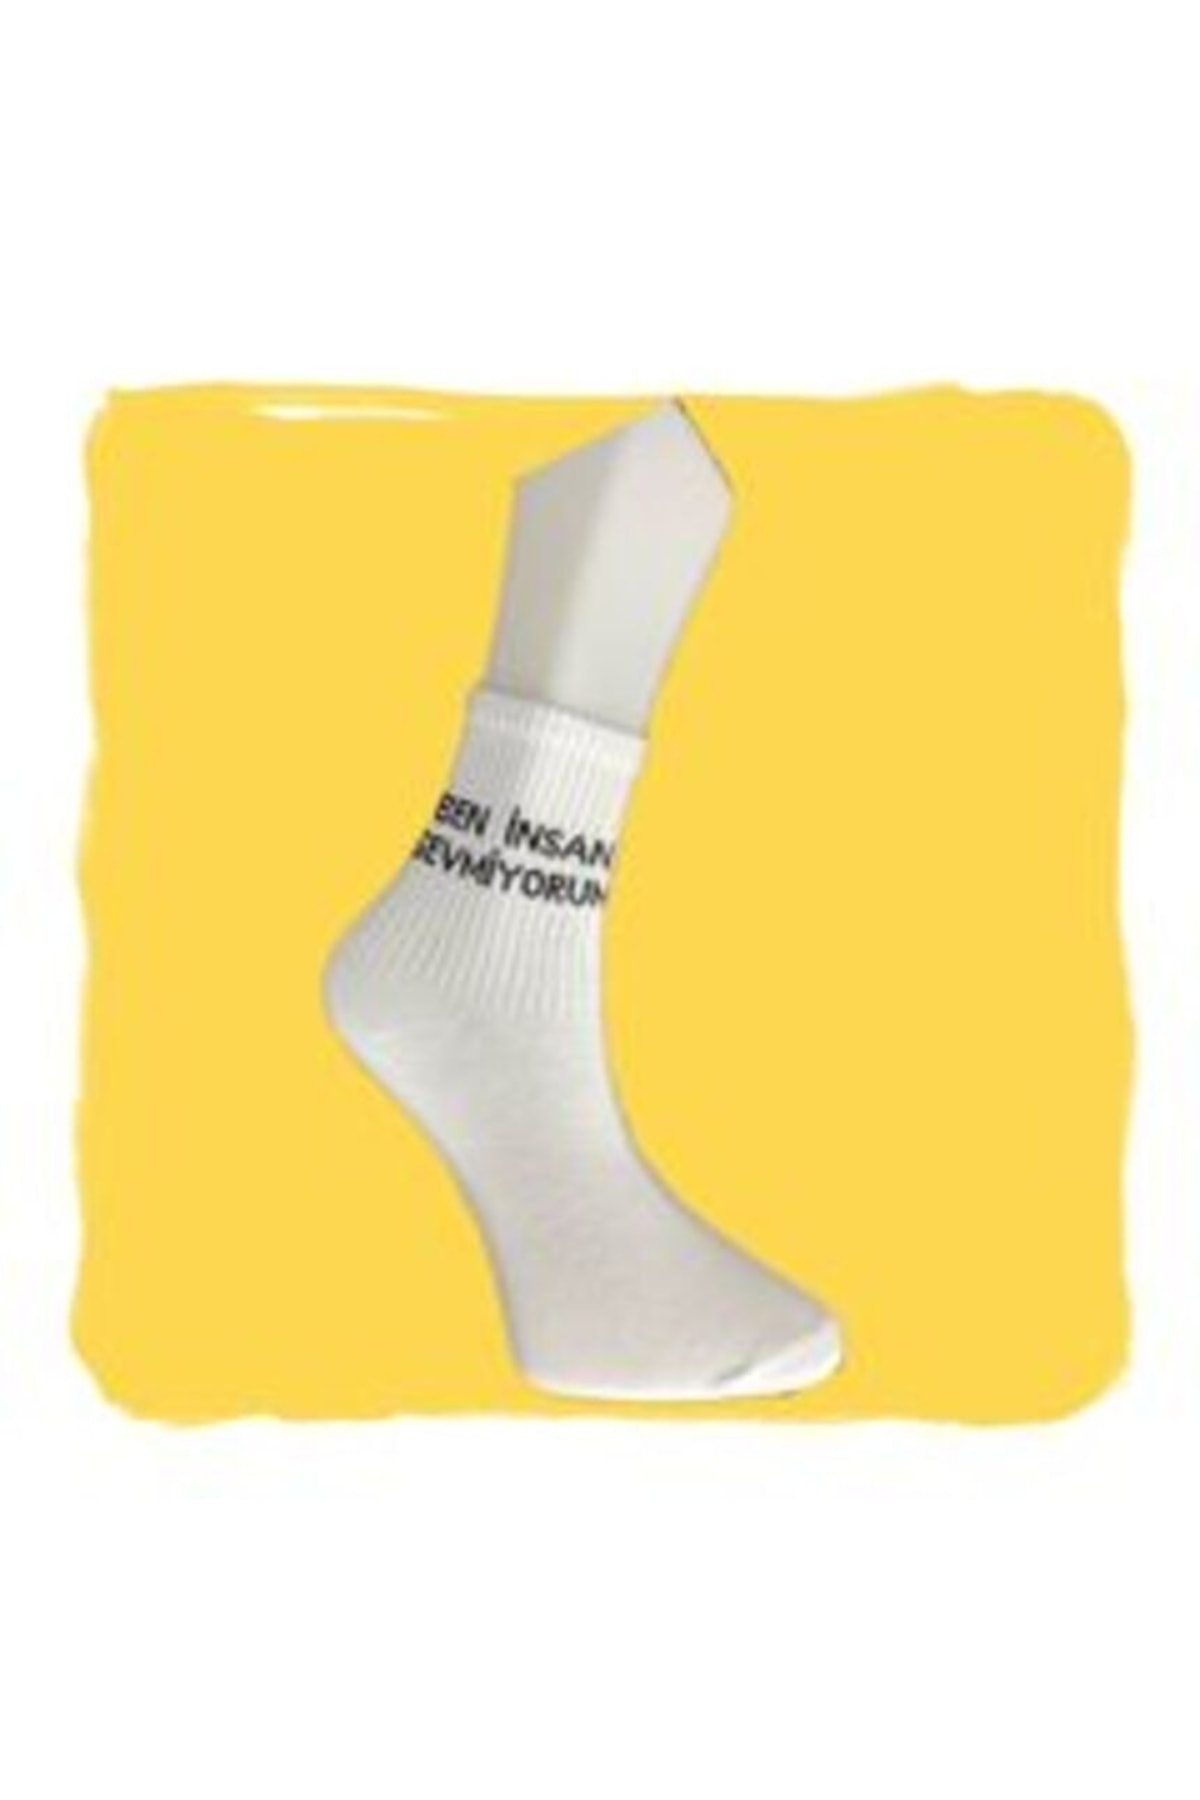 NF GLCN Nf-glcn Beyaz Kısa Kolej Çoraplar (YAZILI) ZO7542